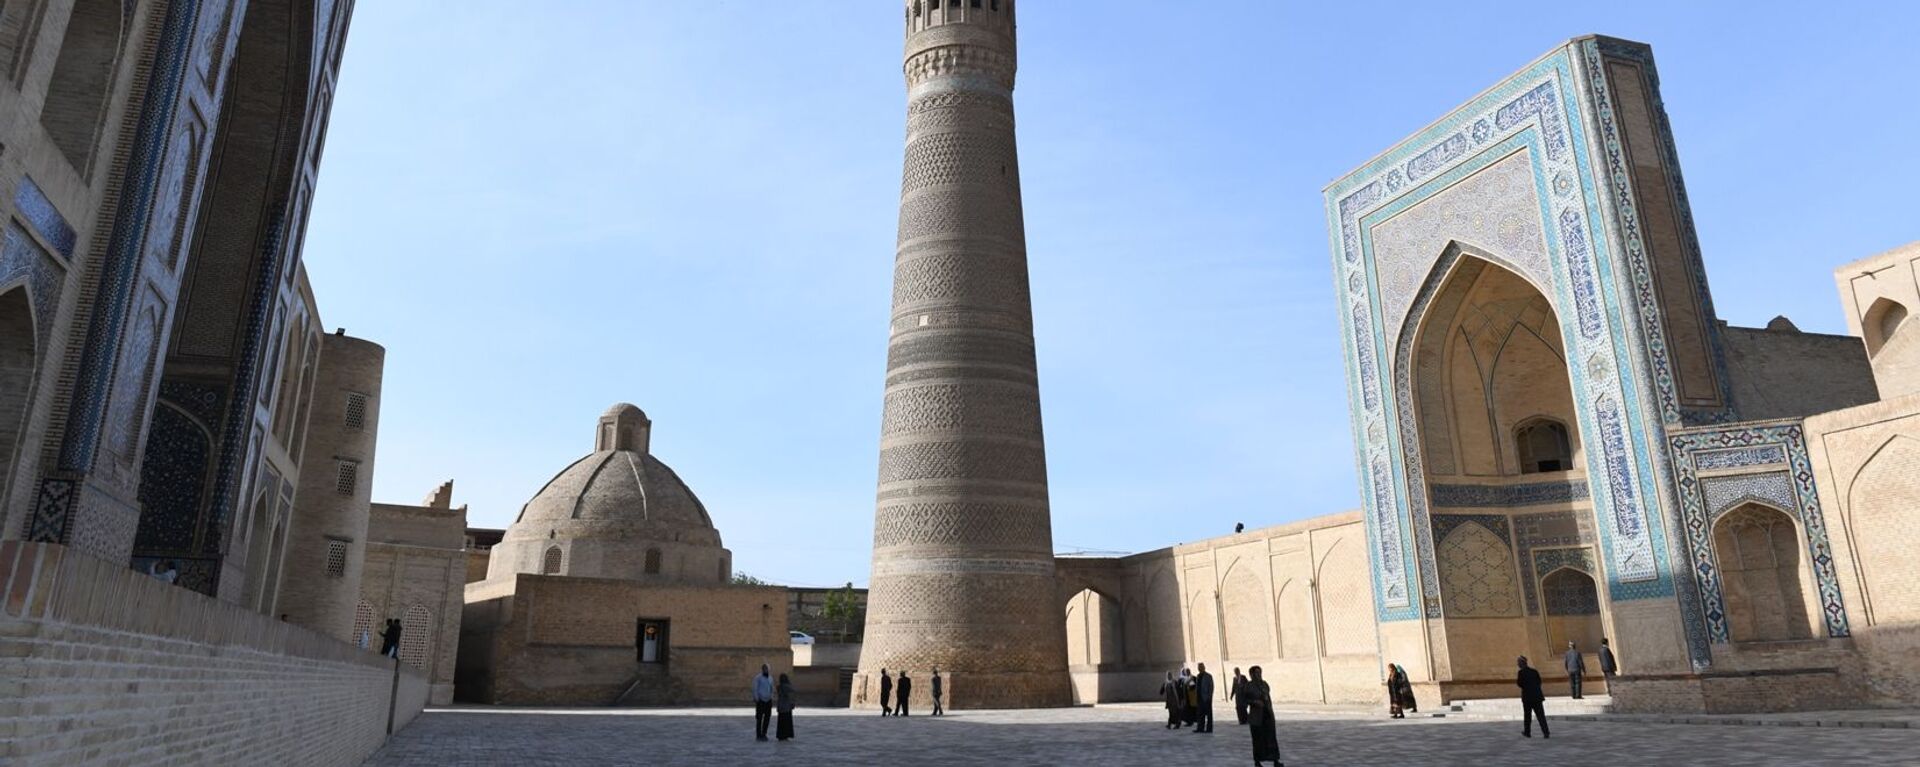 Минарет и мечеть Калян, медресе Мири-Араб (Бухара) - Sputnik Узбекистан, 1920, 17.06.2021